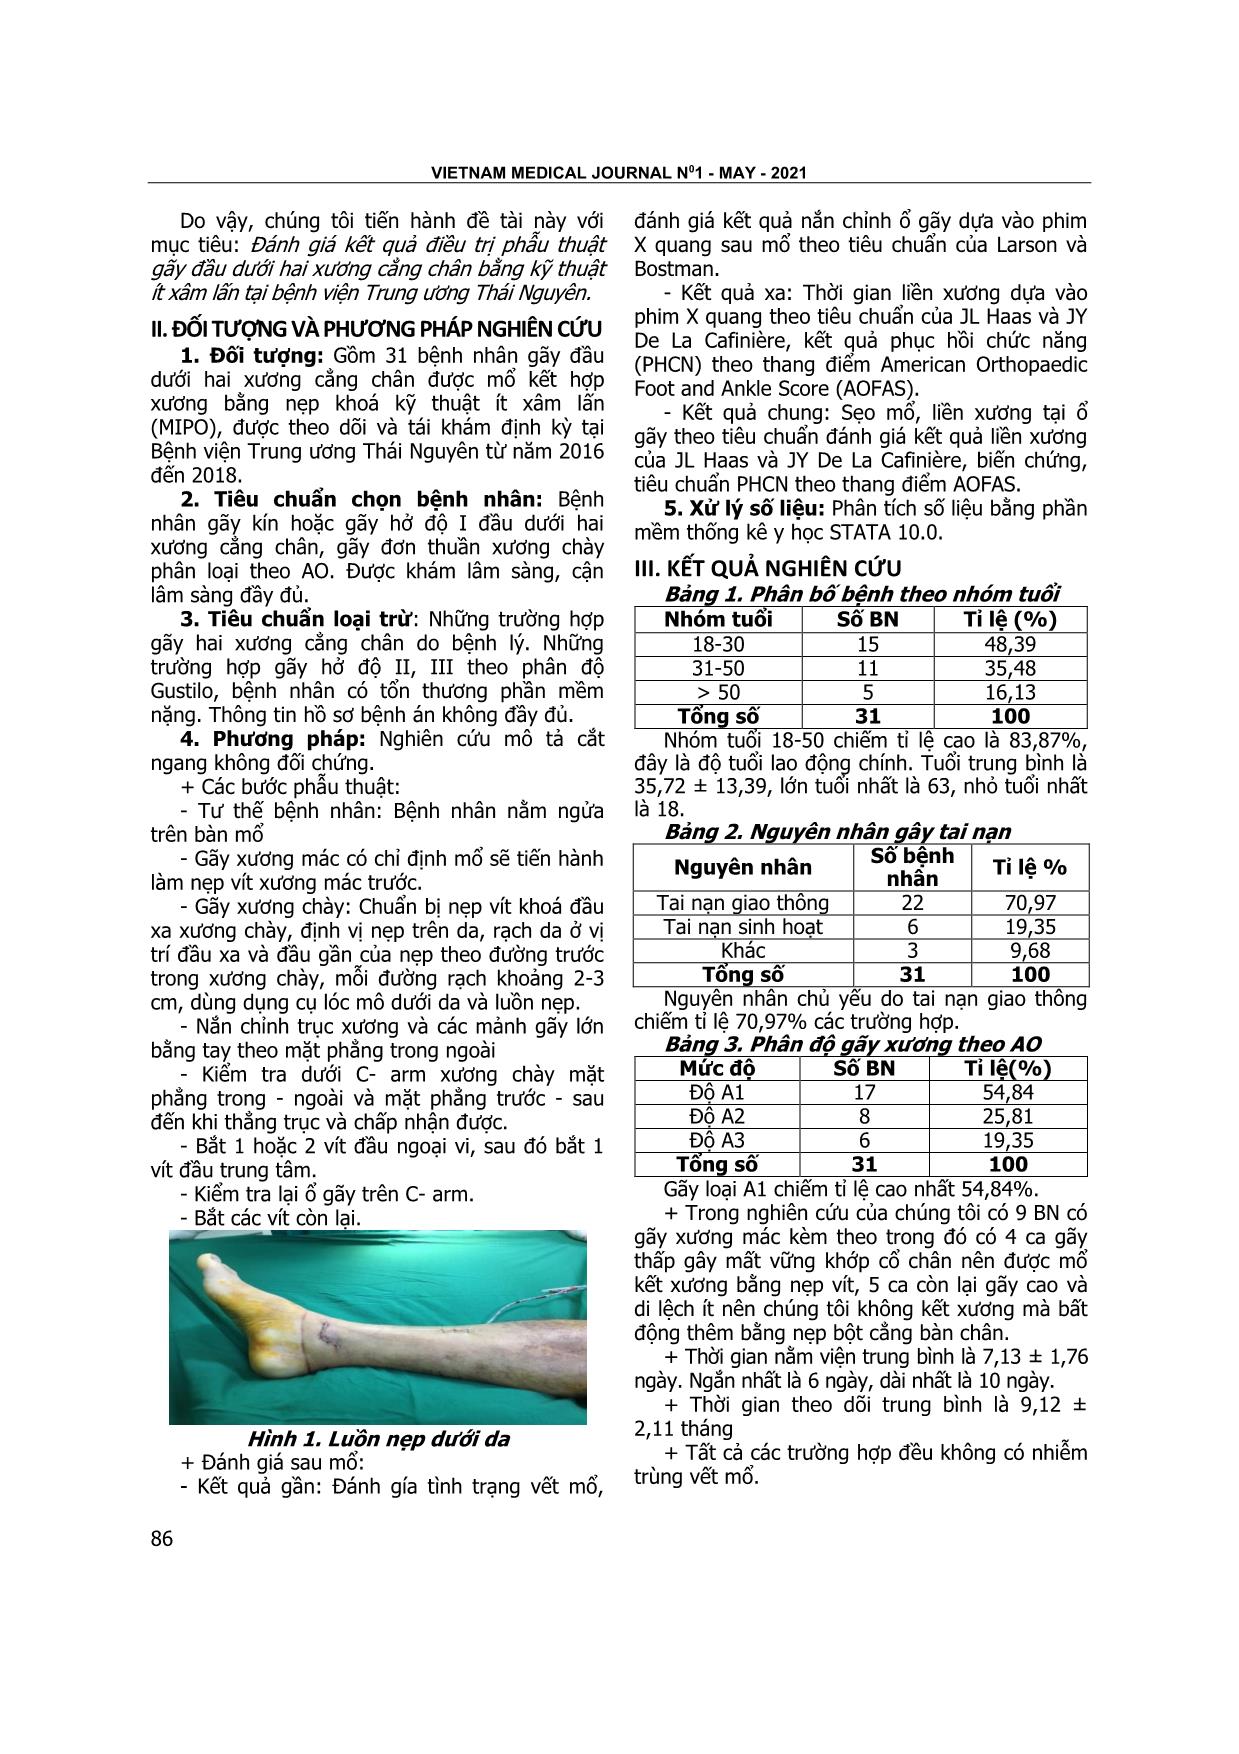 Kết quả điều trị phẫu thuật gãy đầu dưới hai xương cẳng chân bằng kỹ thuật ít xâm lấn tại bệnh viện trung ương Thái Nguyên trang 2